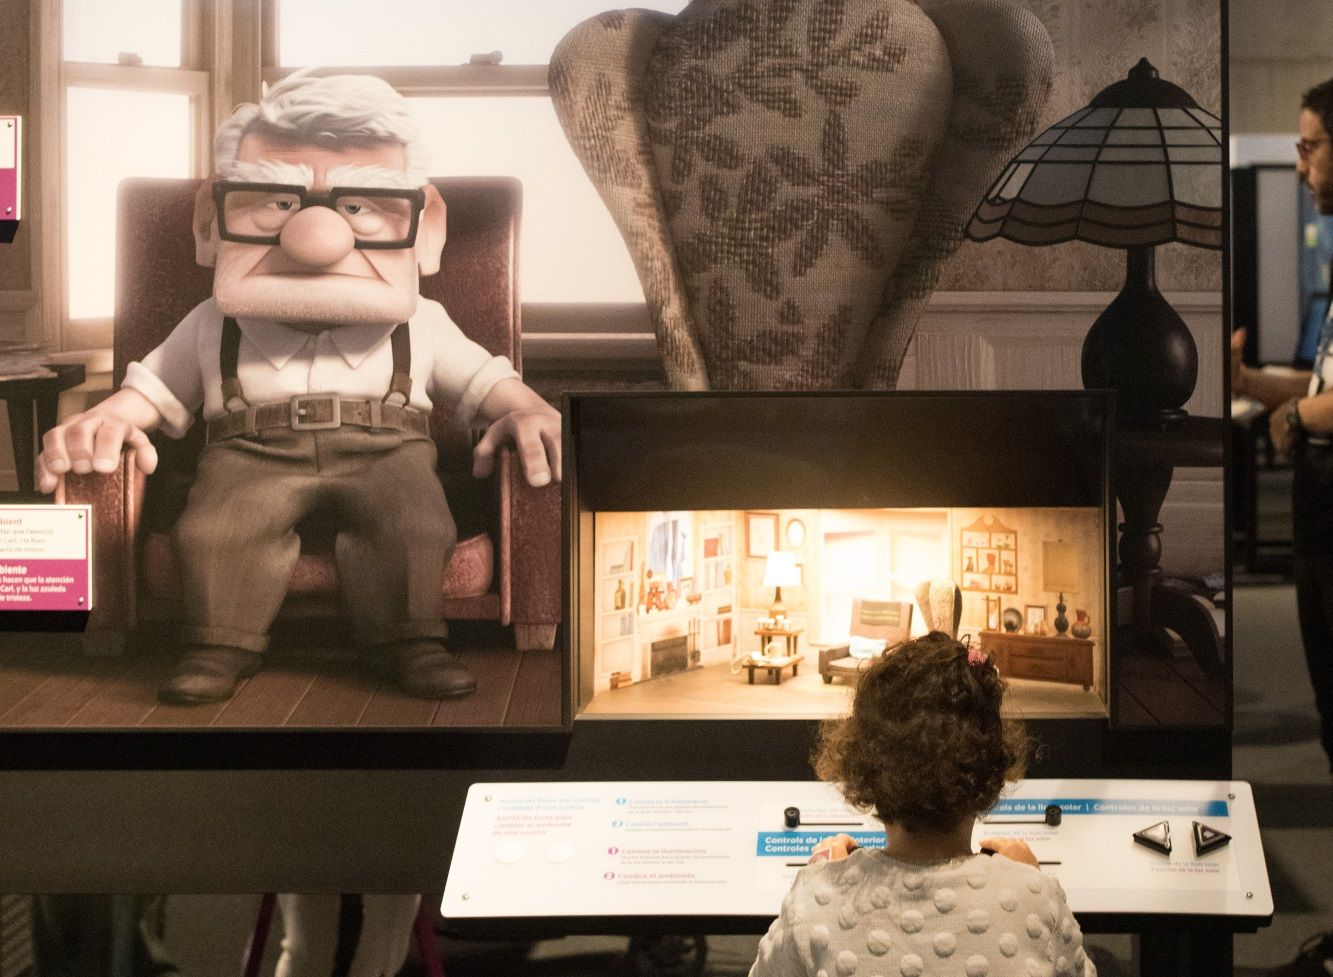 Una niña interactúa con el módulo sobre iluminación de la película 'UP' en la exposición 'La ciencia de Pixar' de Caixaforum Madrid.